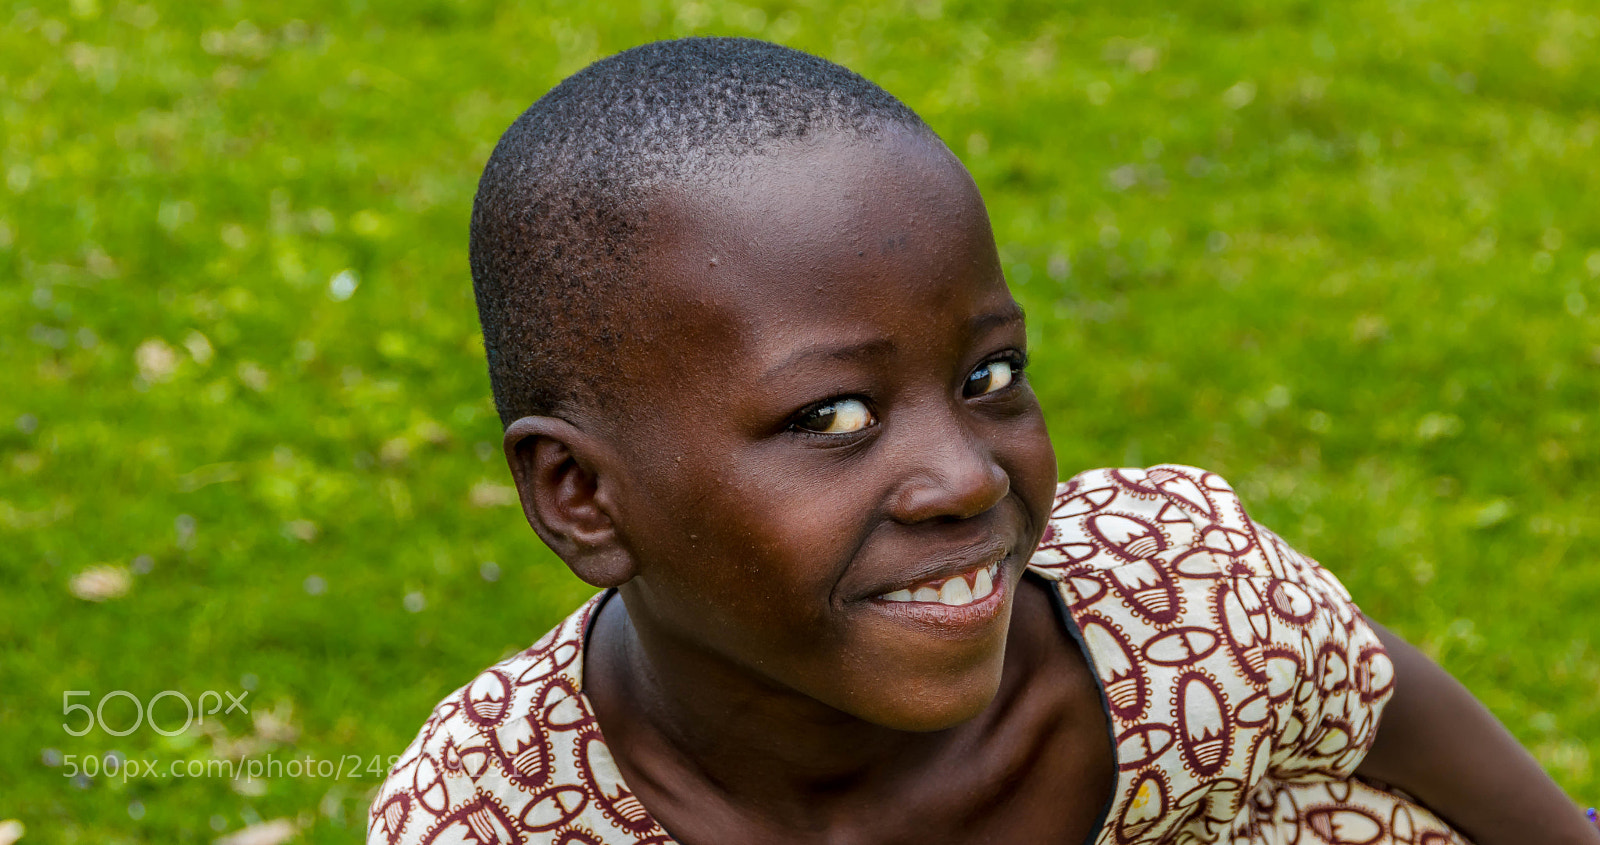 Canon EOS 760D (EOS Rebel T6s / EOS 8000D) sample photo. Ugandan girl photography